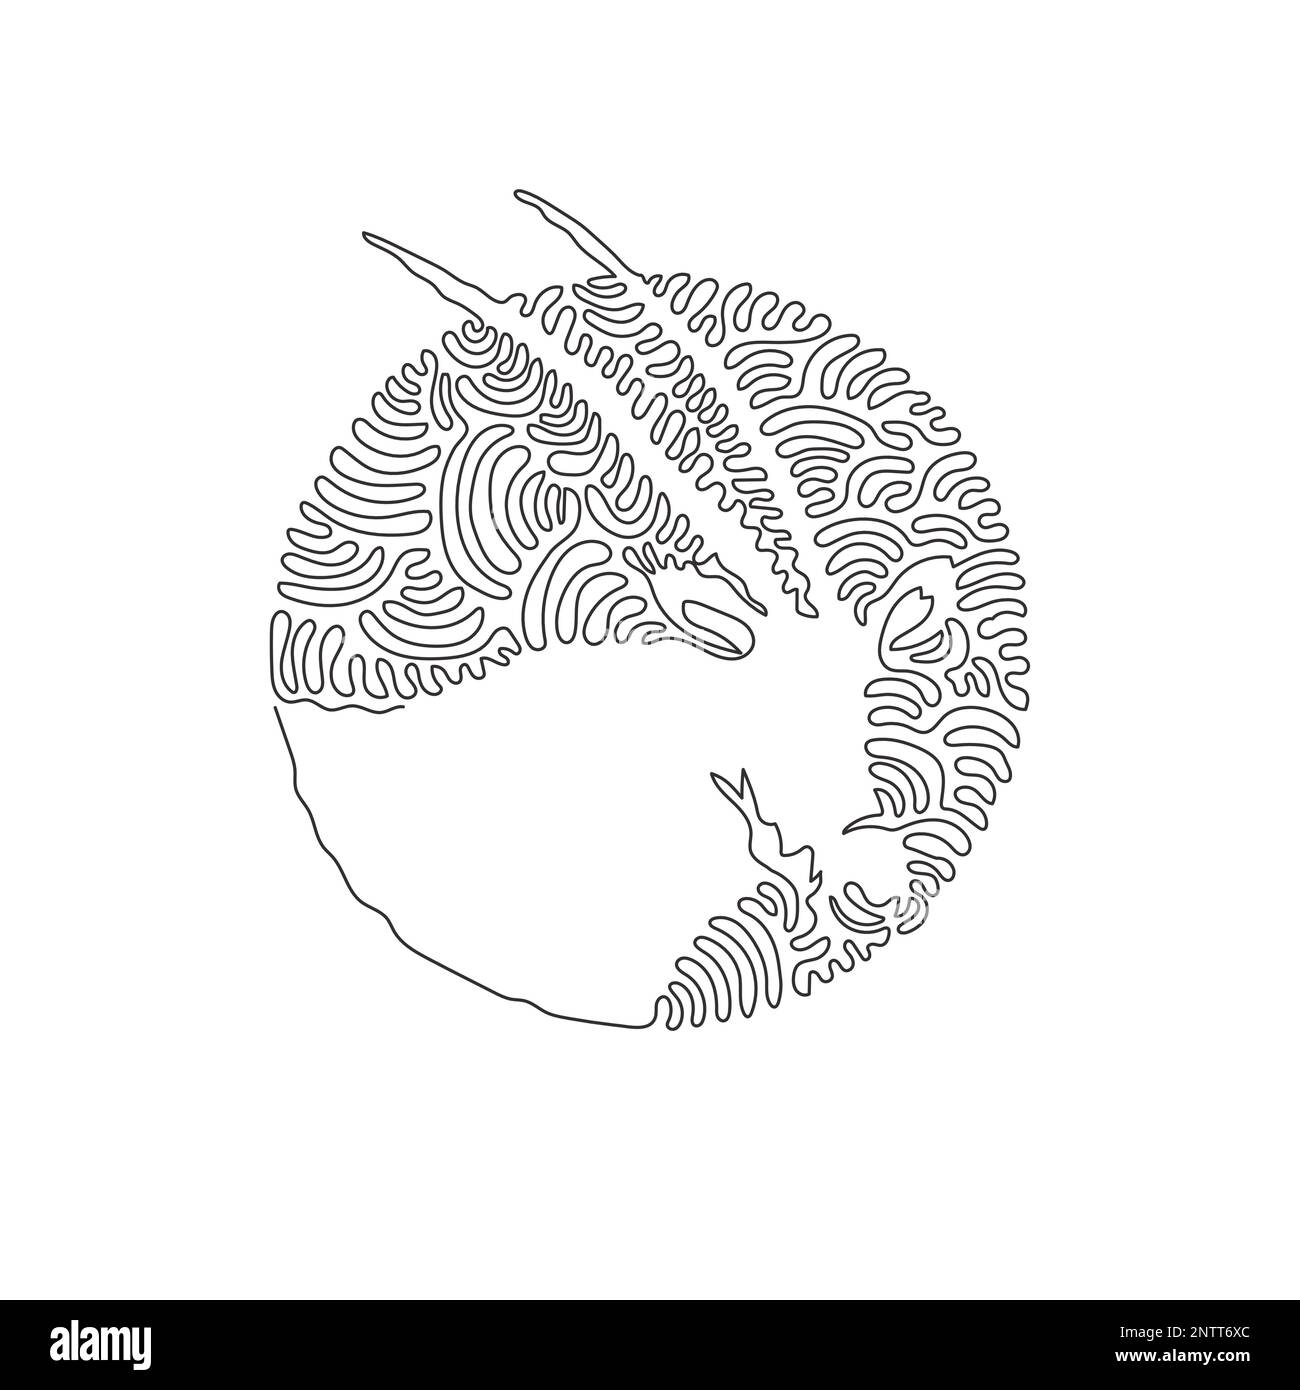 Un solo dibujo de línea rizada de hermoso arte abstracto oryx. Dibujo de línea continua ilustración vectorial de diseño gráfico de elegante oryx con cuernos de cimitarra Ilustración del Vector